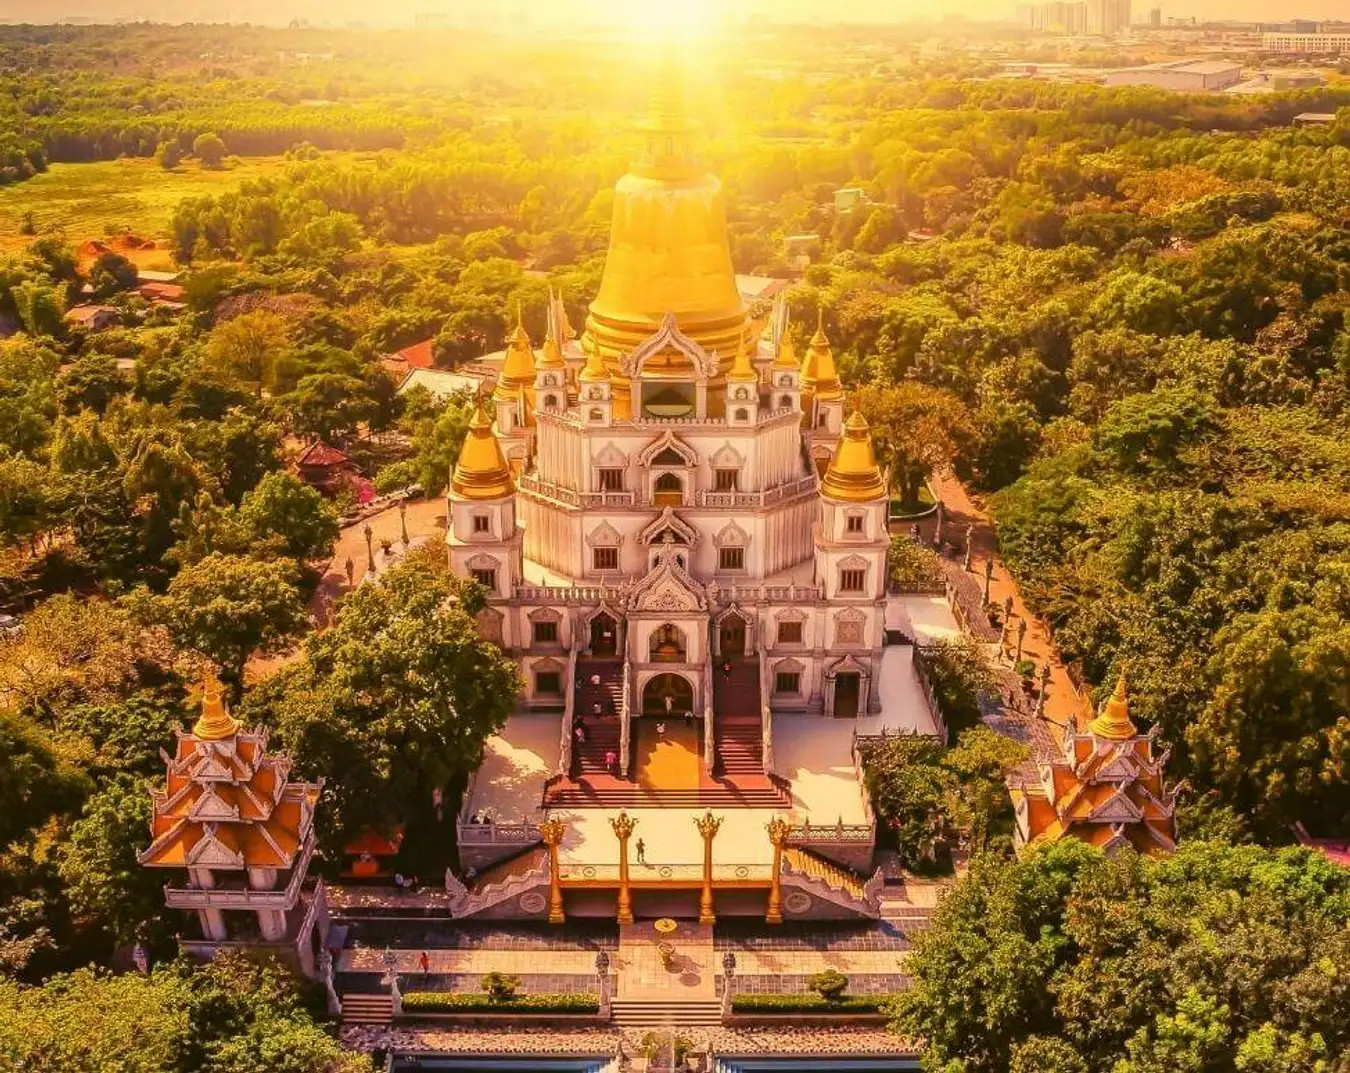 Ngôi chùa không nhang khói ở Việt Nam, lọt top đẹp bật nhất thế giới, khách ghé thăm sững sờ tưởng ở nước ngoài - ảnh 1